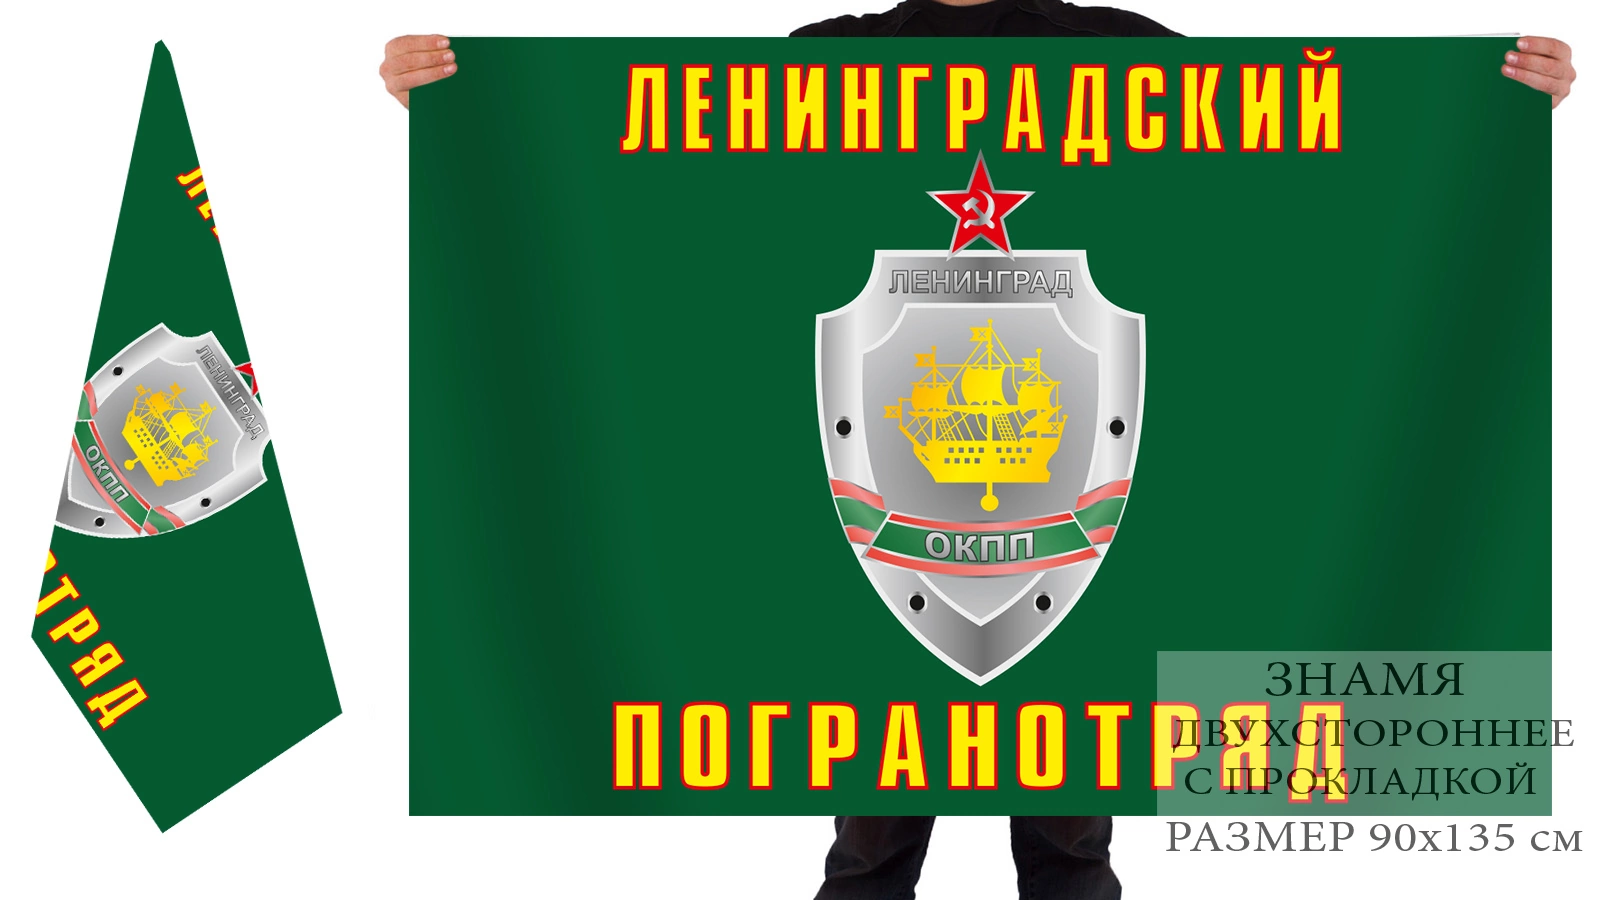 Двусторонний флаг Ленинградского пограничного отряда